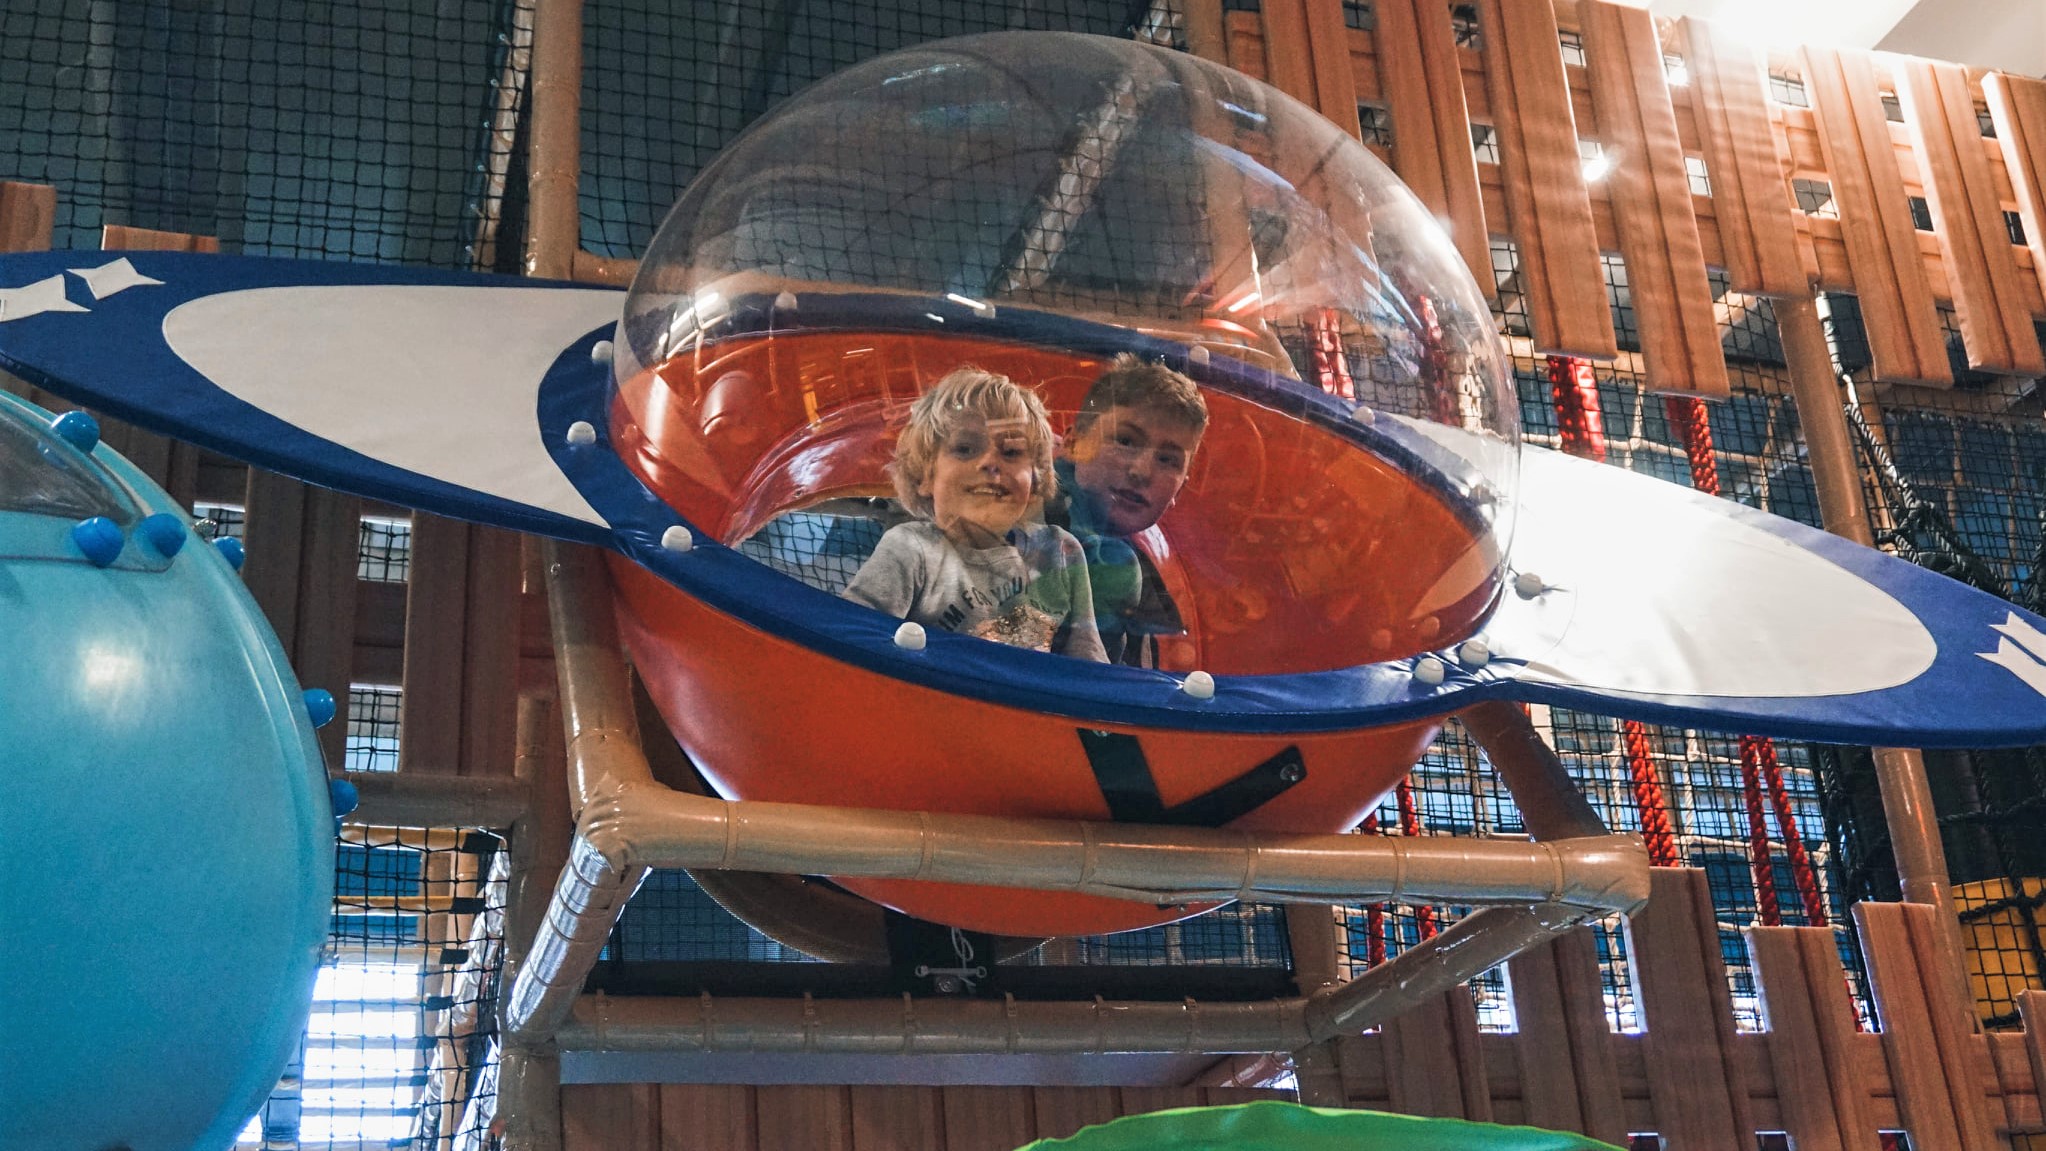 To barn leikar i eit romskip med glasvindauge. Foto: Voss Bowling og Leikeland